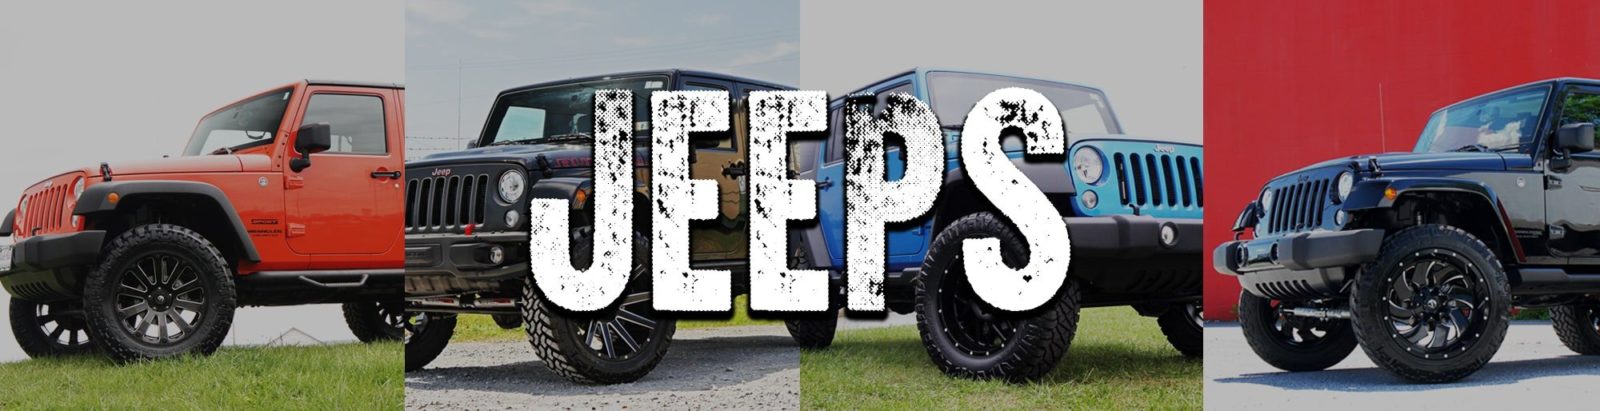 jeep trucks